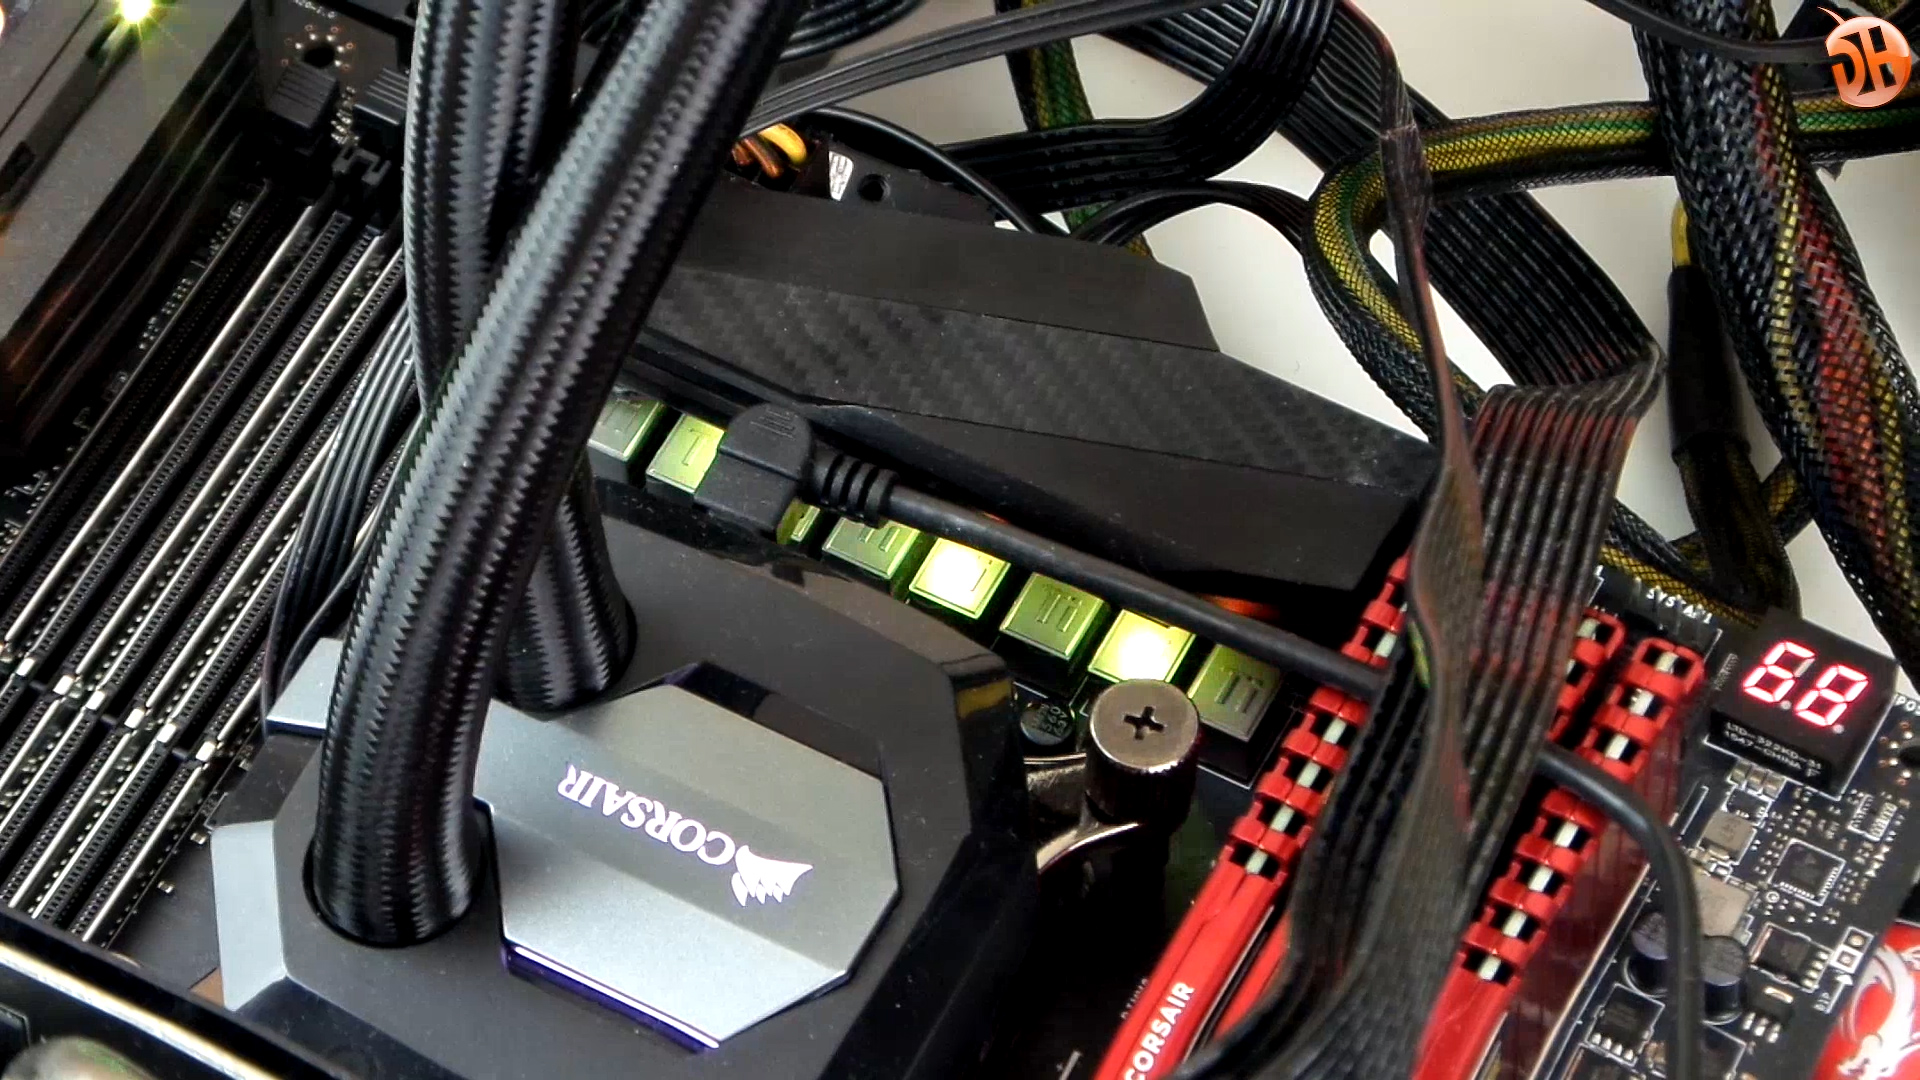 MSI X99A Gaming Pro Carbon 'Hem tasarım hem performans' anakartını inceliyoruz